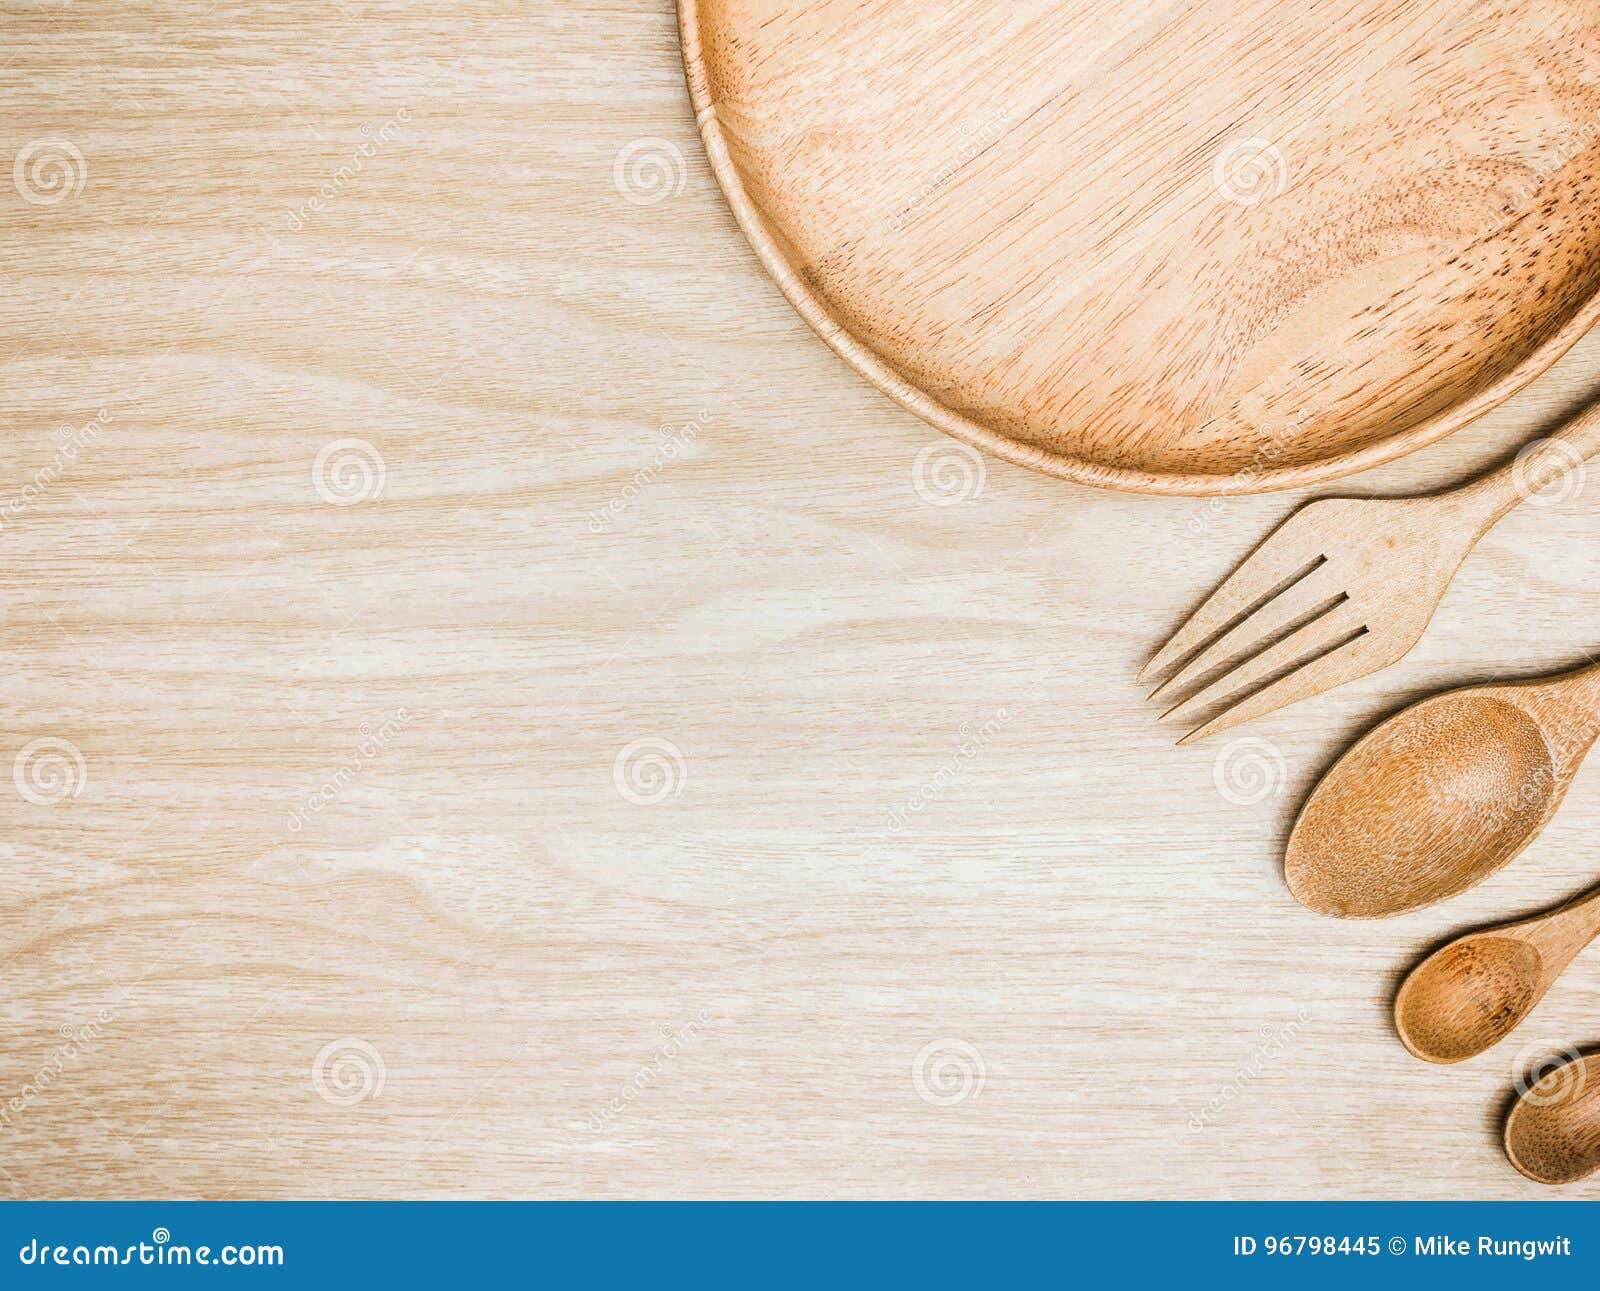 Đũa gỗ và Wisk bằng thép không gỉ để nấu ăn trên nền gỗ là lựa chọn hoàn hảo cho những ai yêu thích nấu ăn và thiết kế nội thất tinh tế. Hãy xem qua hình ảnh này để tinh tế hóa không gian bếp của bạn!